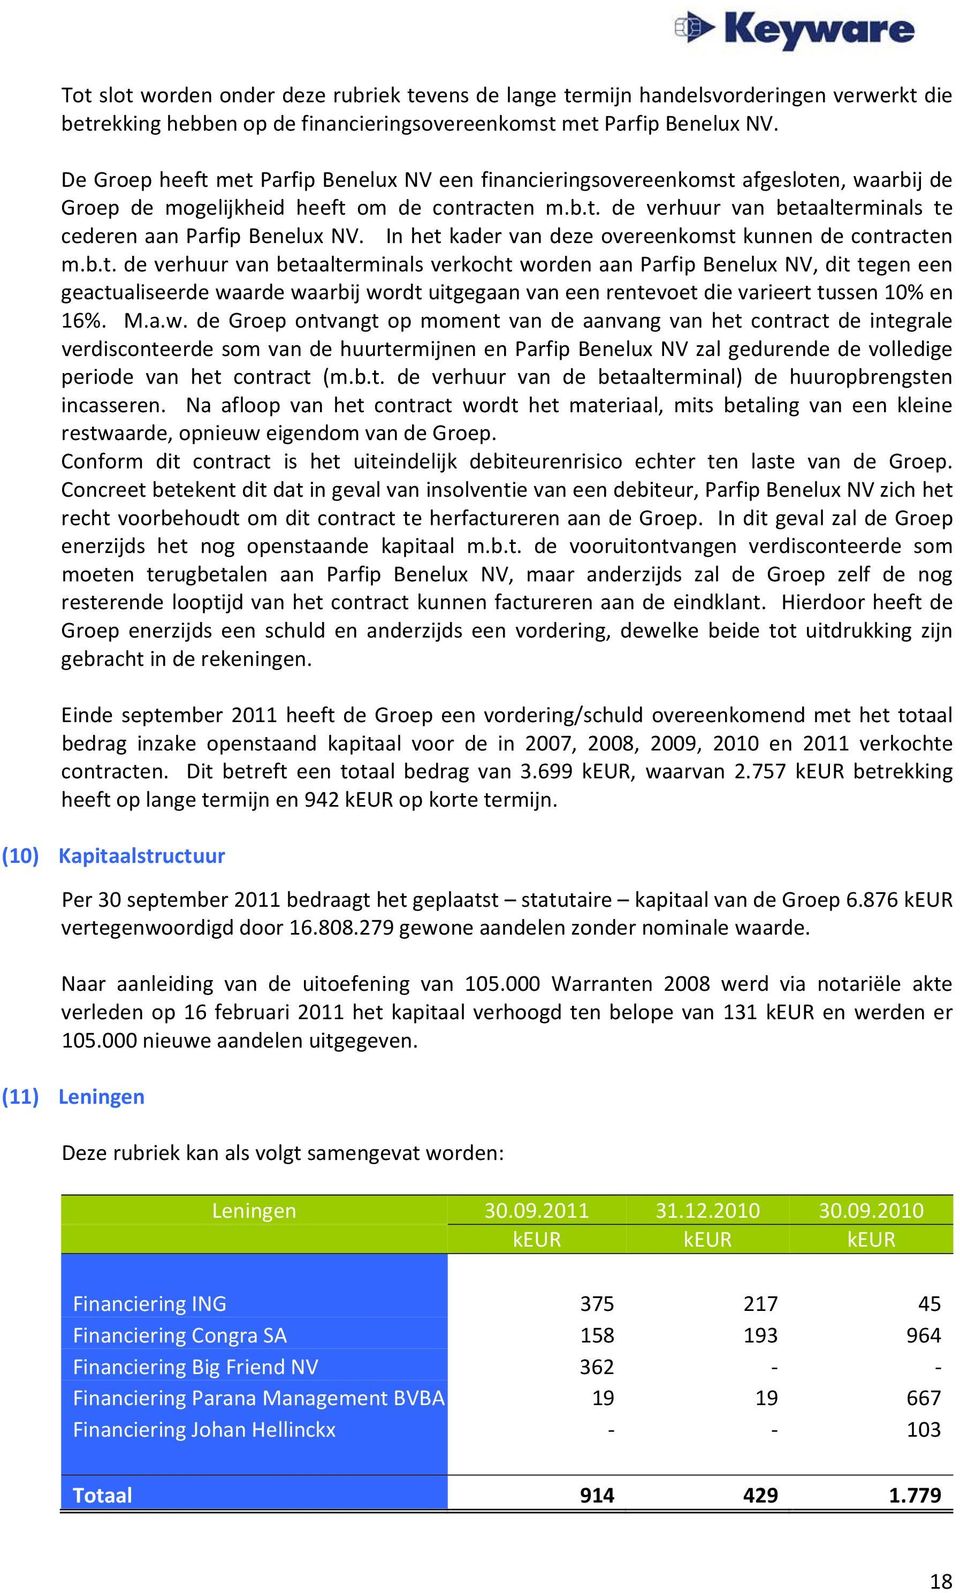 In het kader van deze overeenkomst kunnen de contracten m.b.t. de verhuur van betaalterminals verkocht worden aan Parfip Benelux NV, dit tegen een geactualiseerde waarde waarbij wordt uitgegaan van een rentevoet die varieert tussen 10% en 16%.